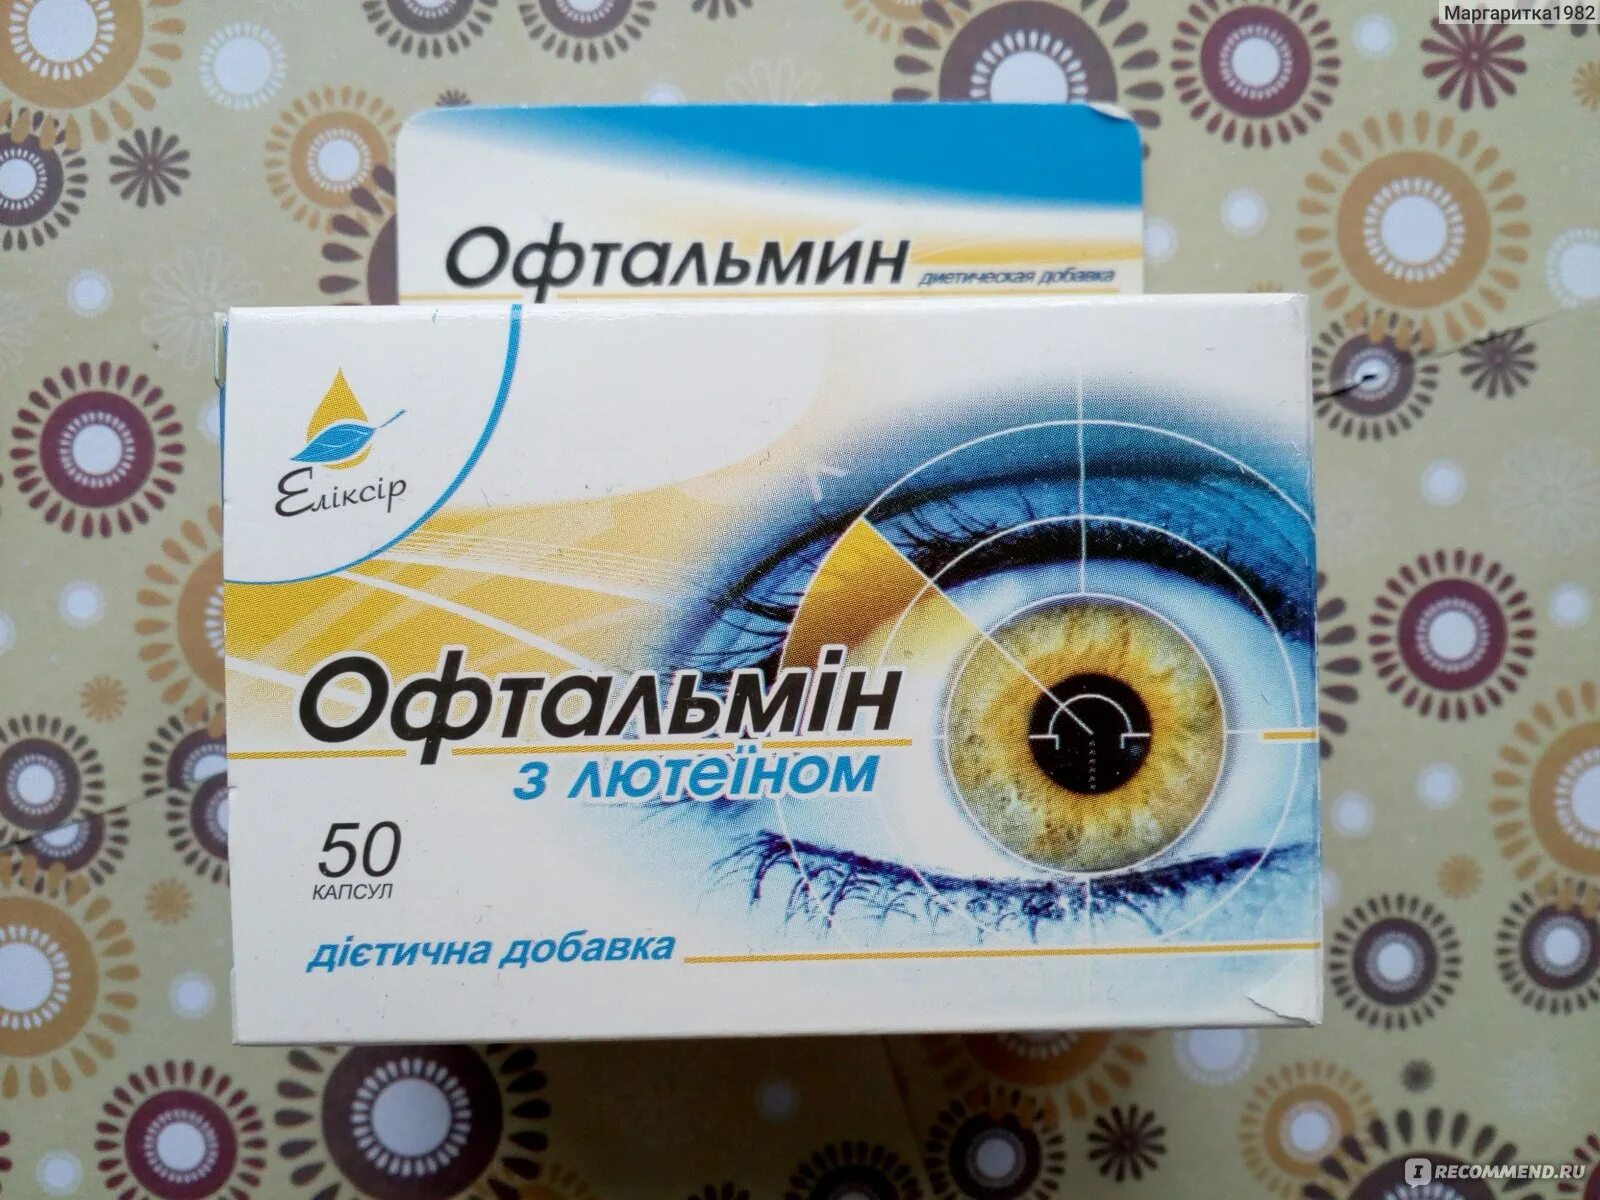 Офтальмин. Офтальмин таблетки. Офтальмин для глаз. Витамины для глаз офталамин. Офталамин инструкция